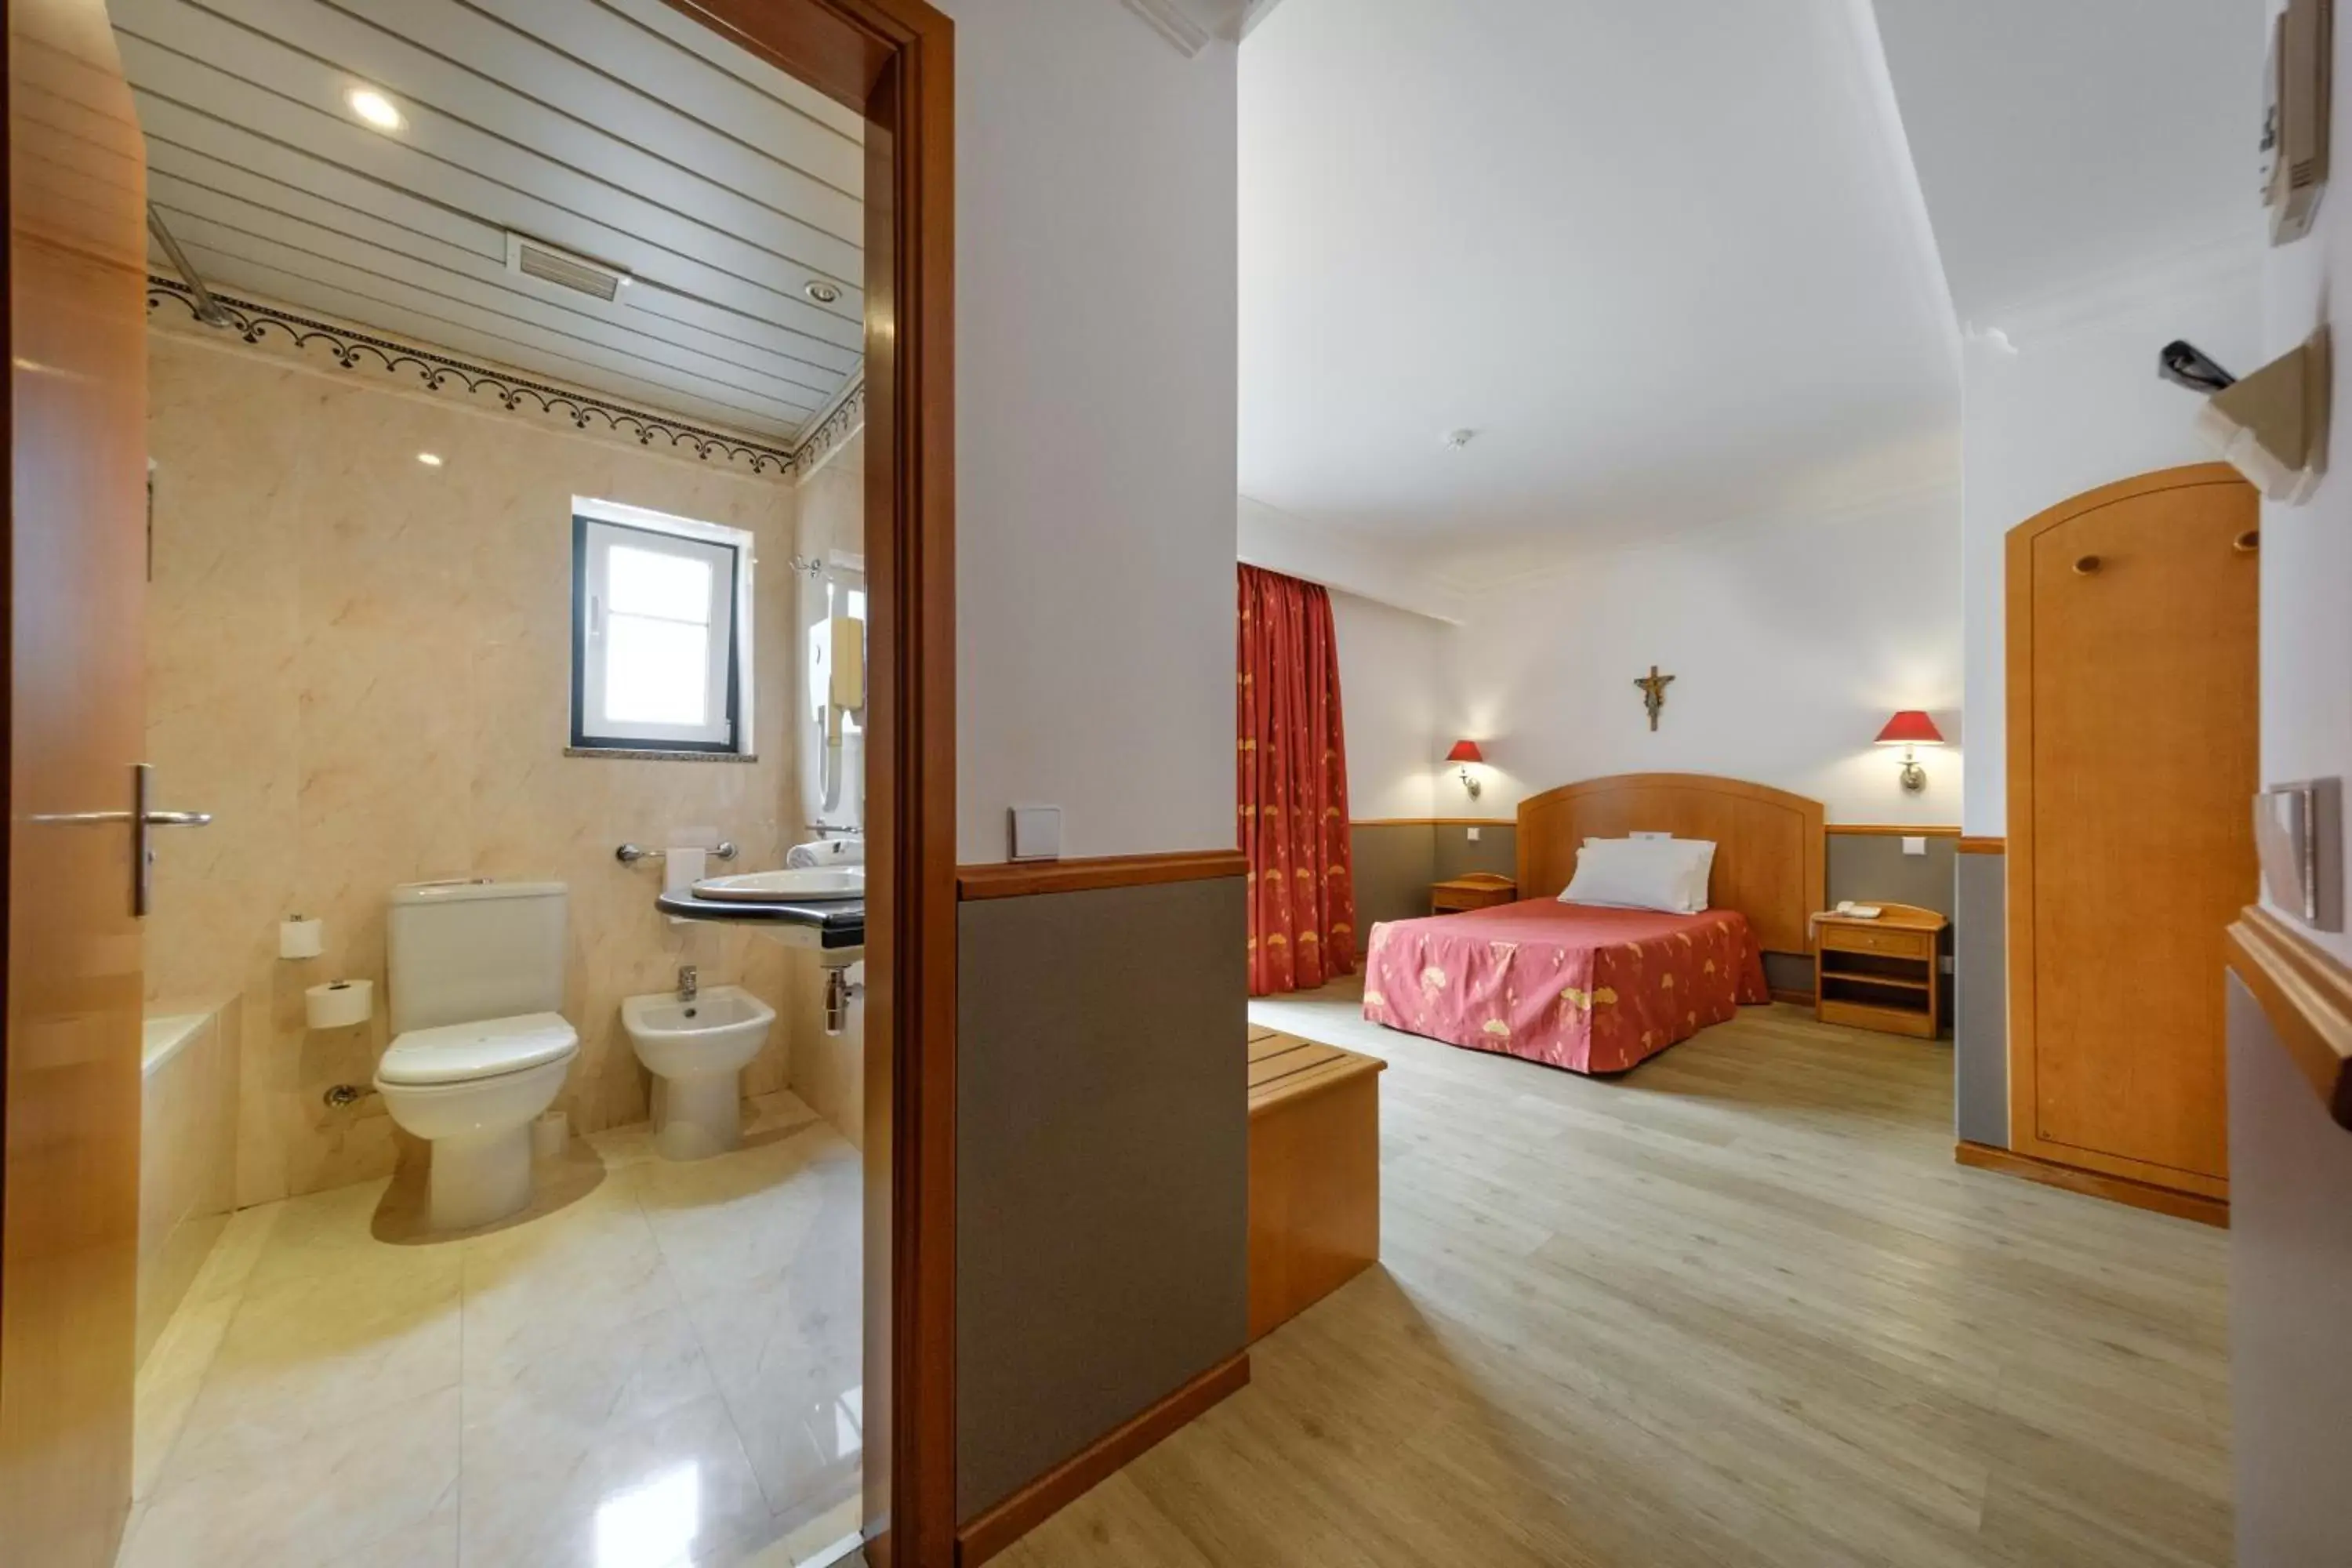 Bedroom, Bathroom in Hotel Santo Amaro